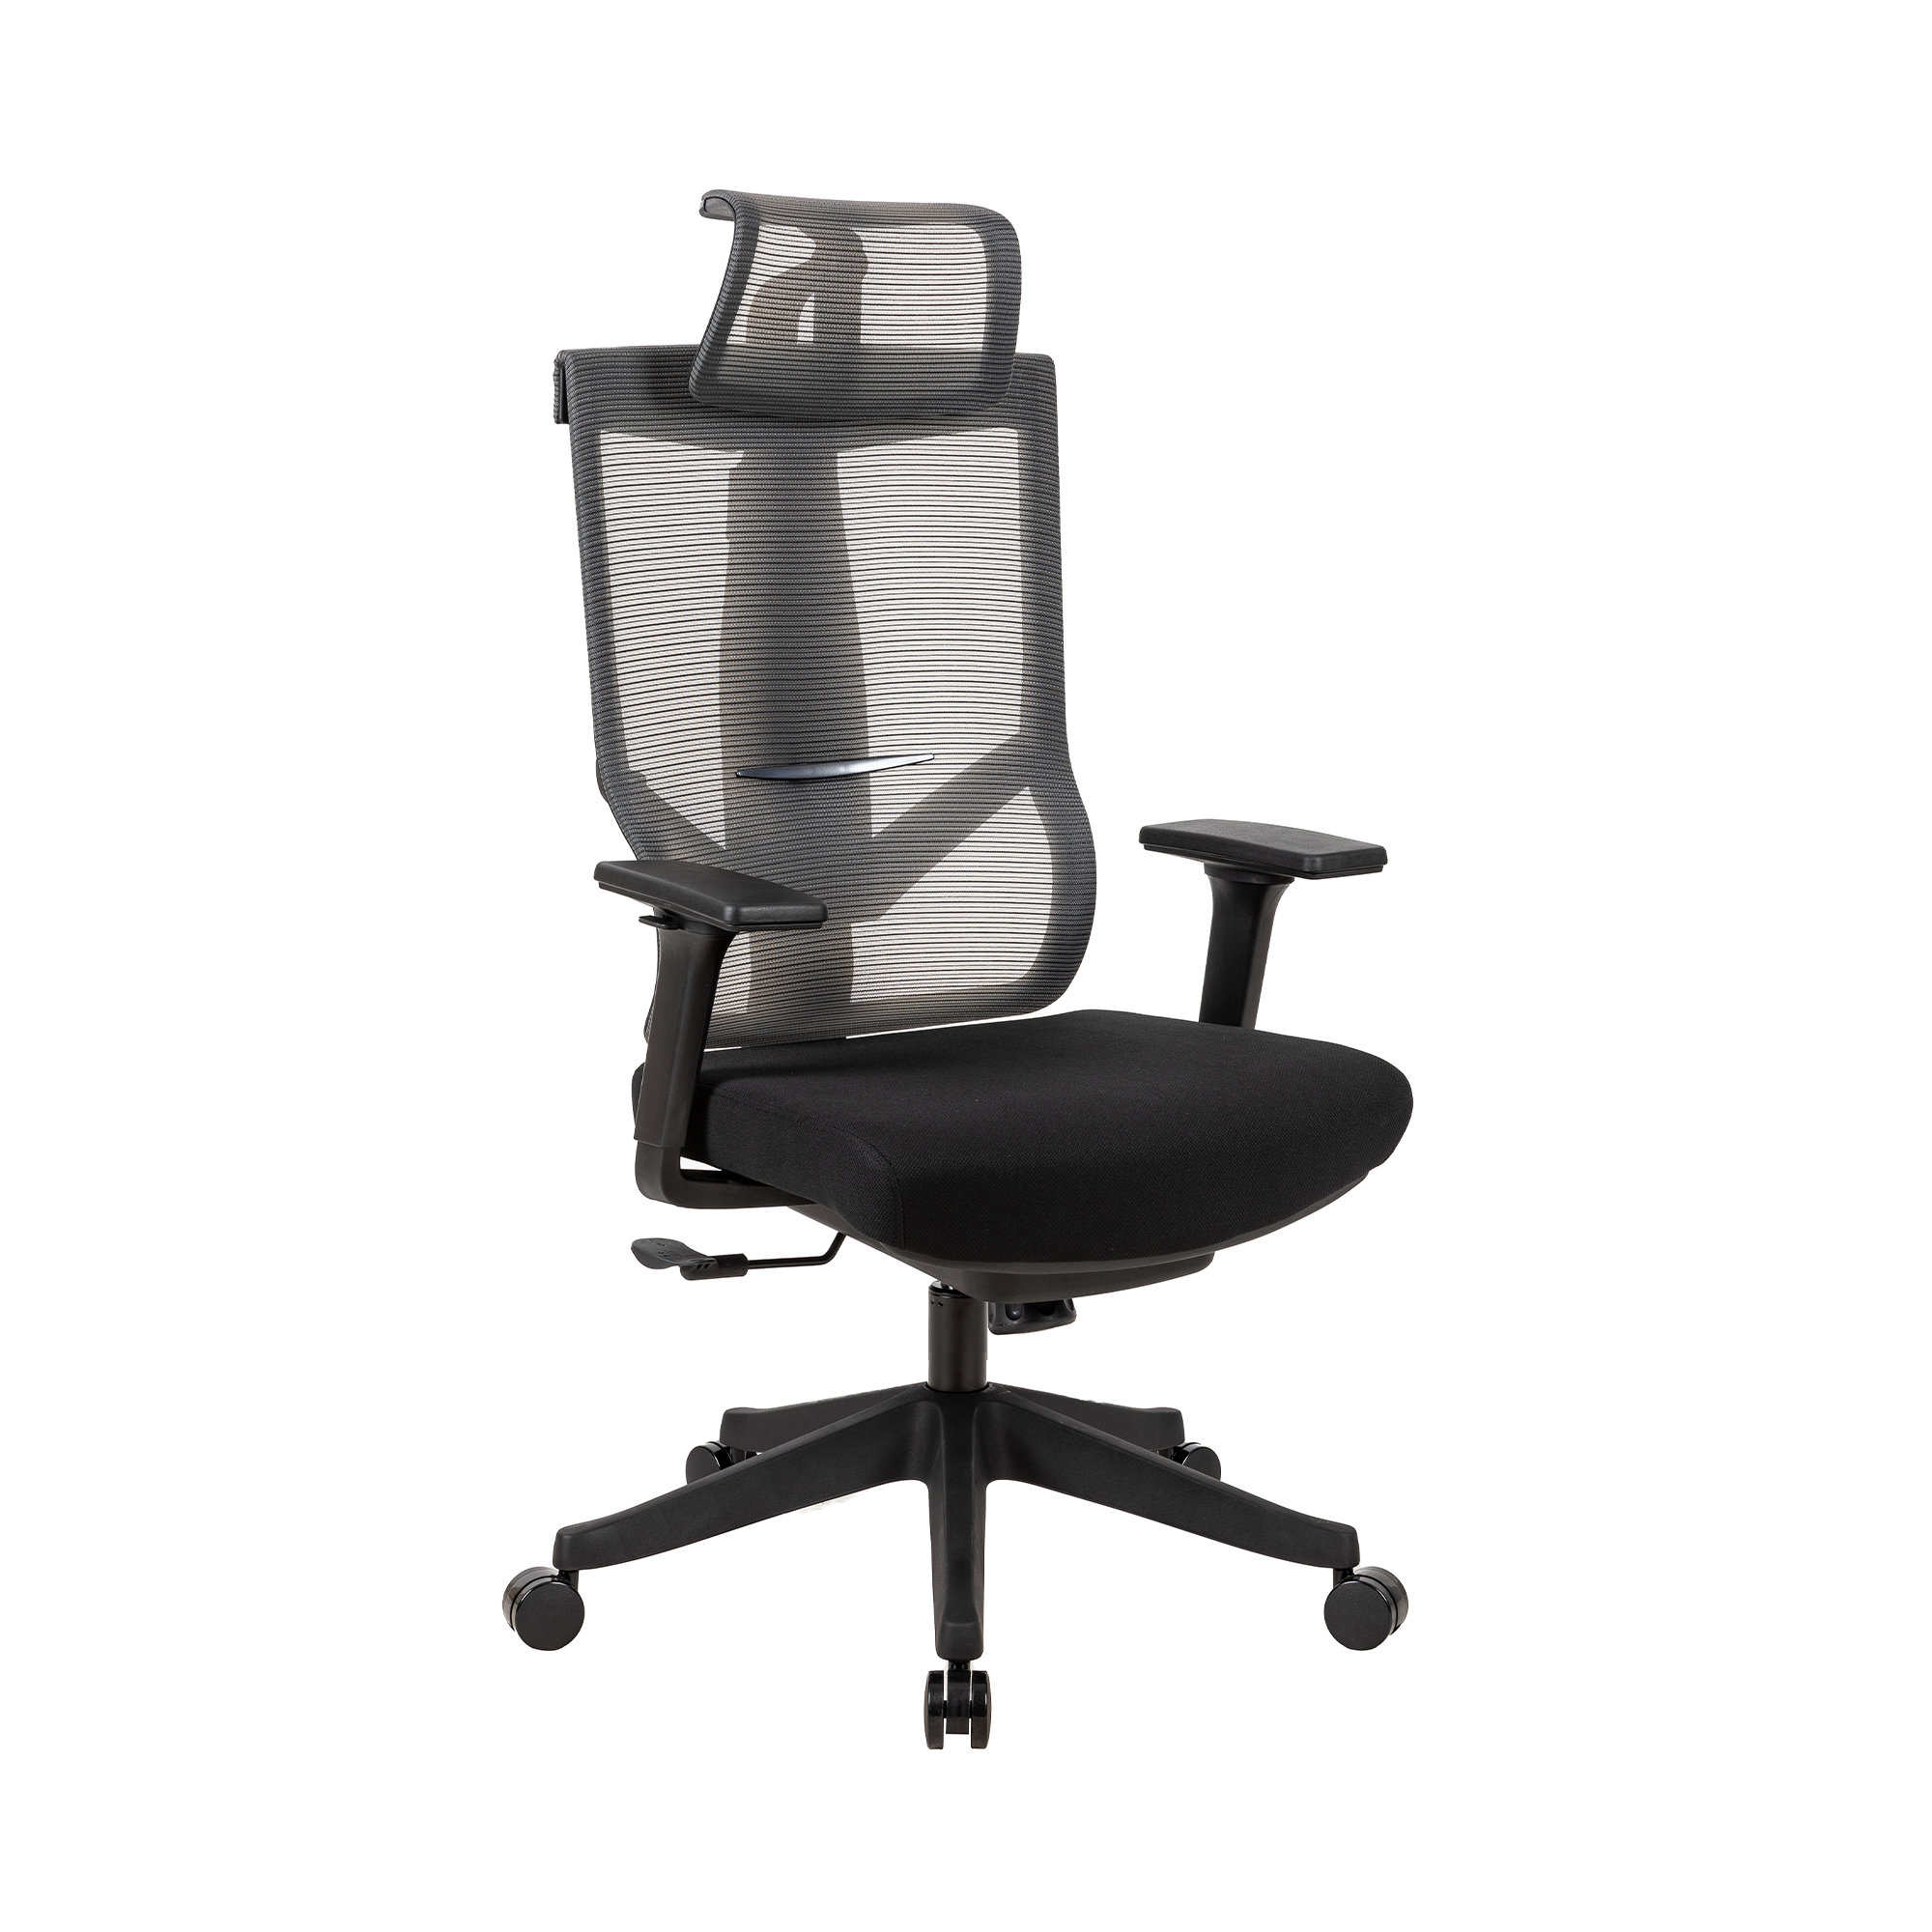 https://assets.wfcdn.com/im/68112493/compr-r85/2447/244730511/krey-ergonomic-mesh-executive-desk-office-chair-with-strong-lumbar-support.jpg